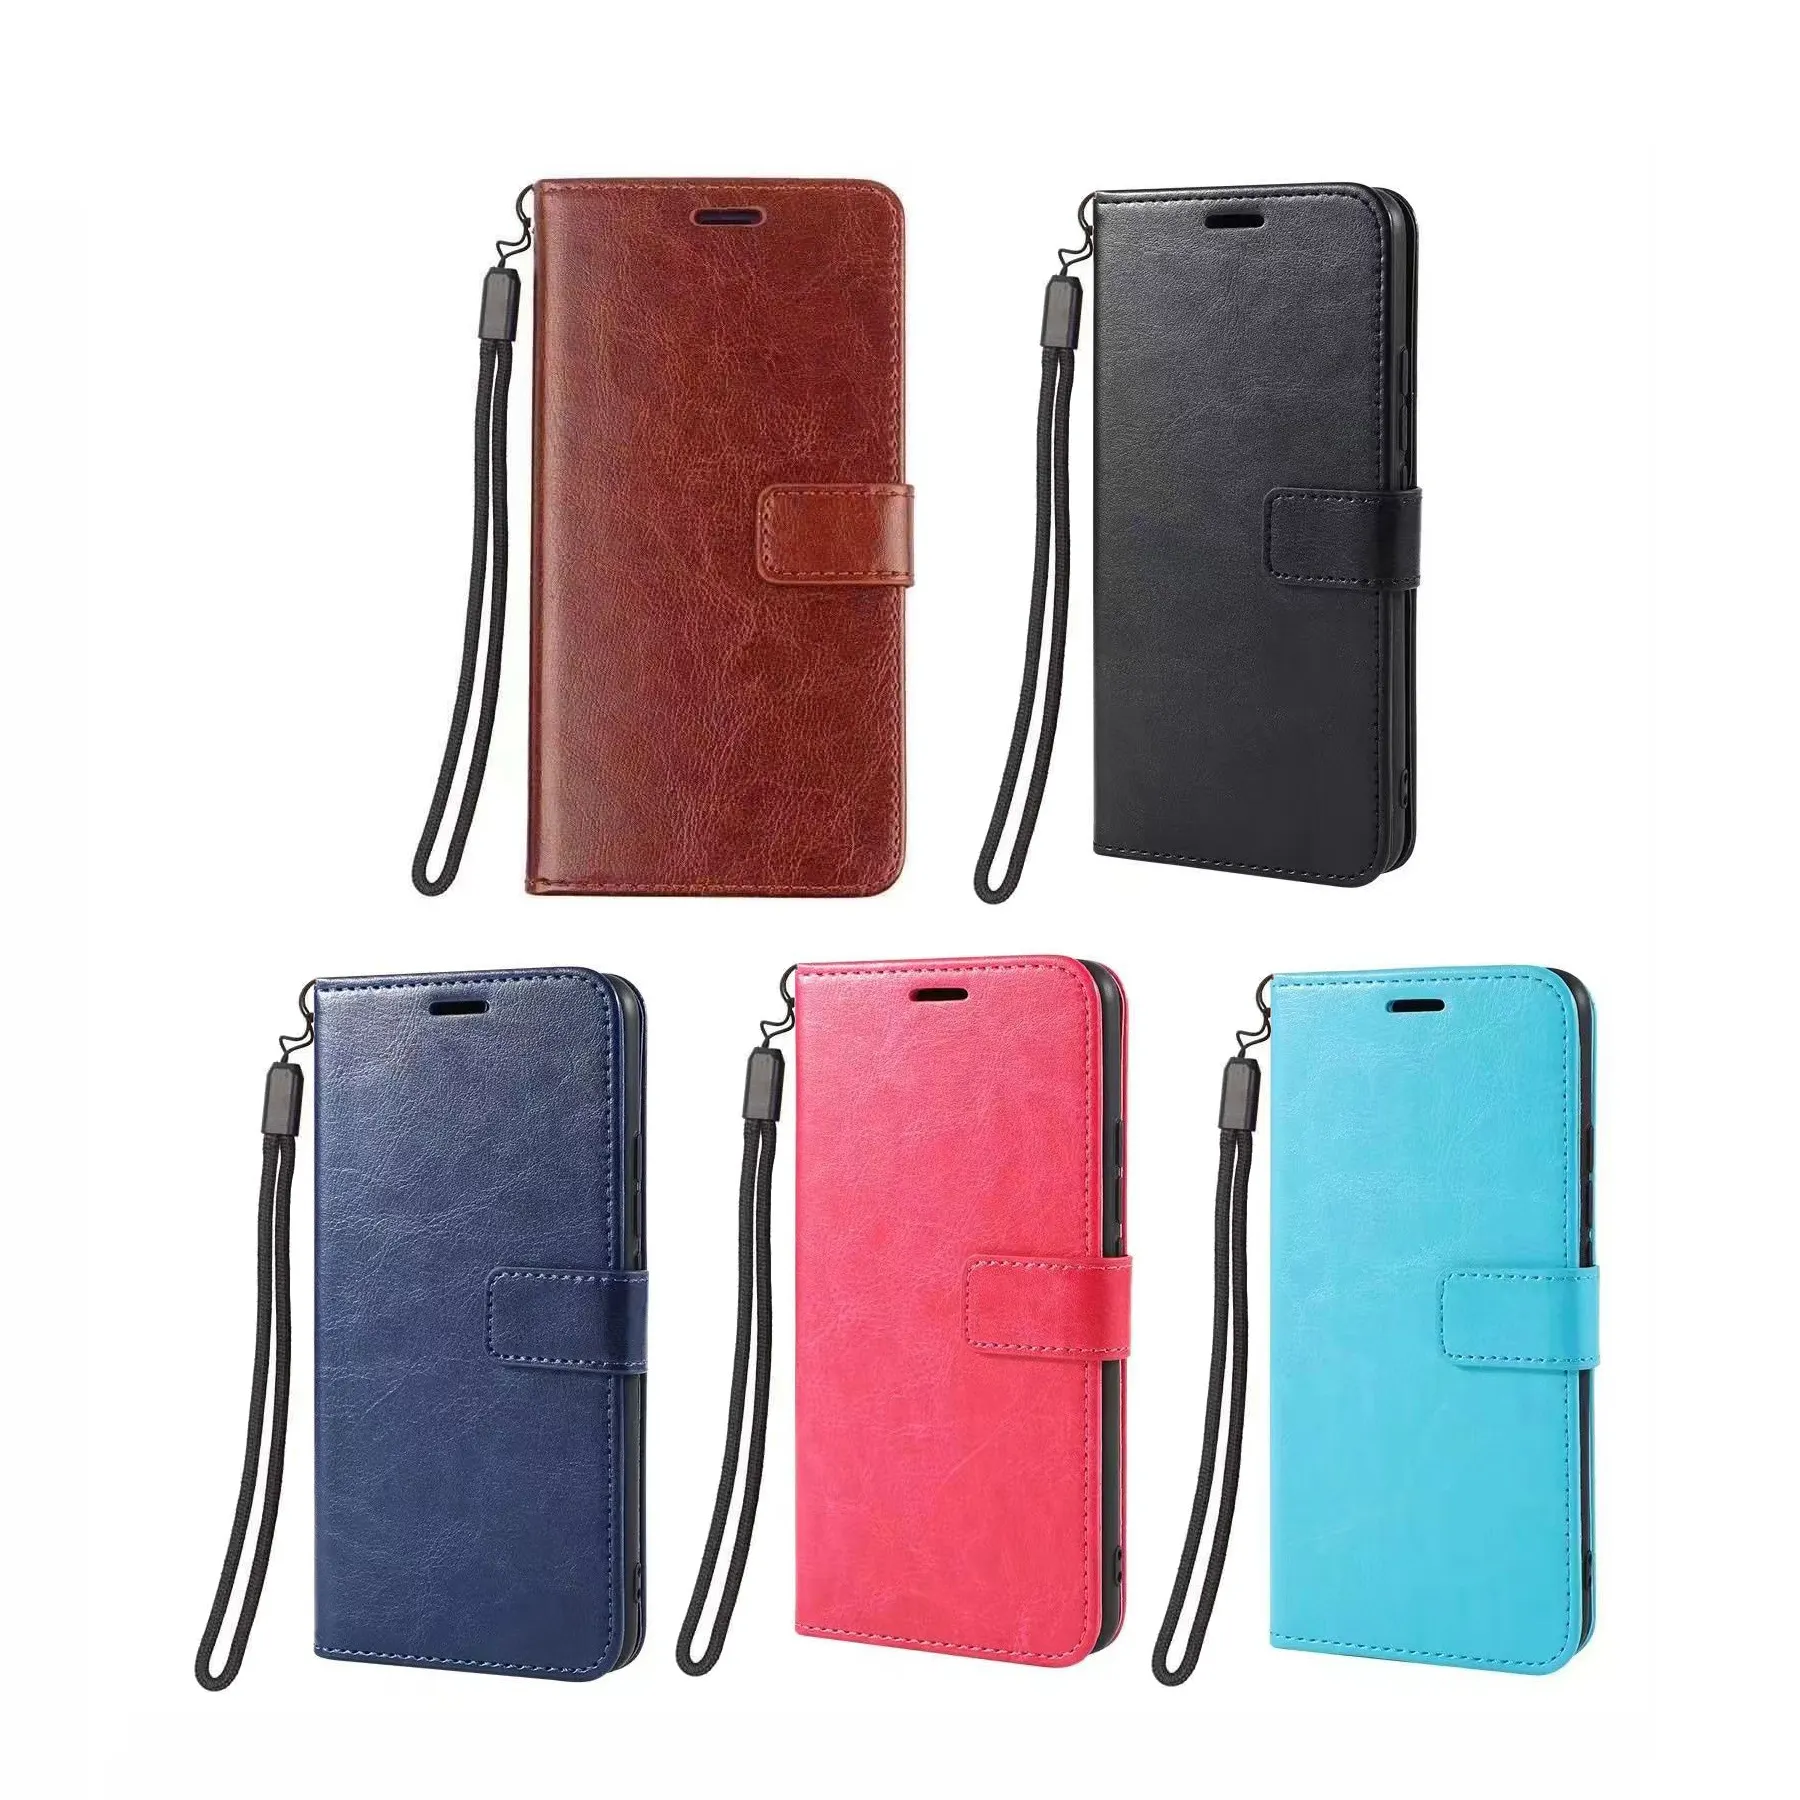 Note 10 + casing pelindung dompet kartu kredit mewah Flip casing ponsel untuk Galaxy Samsung Note10 Plus sampul kulit PU buku Kickstand